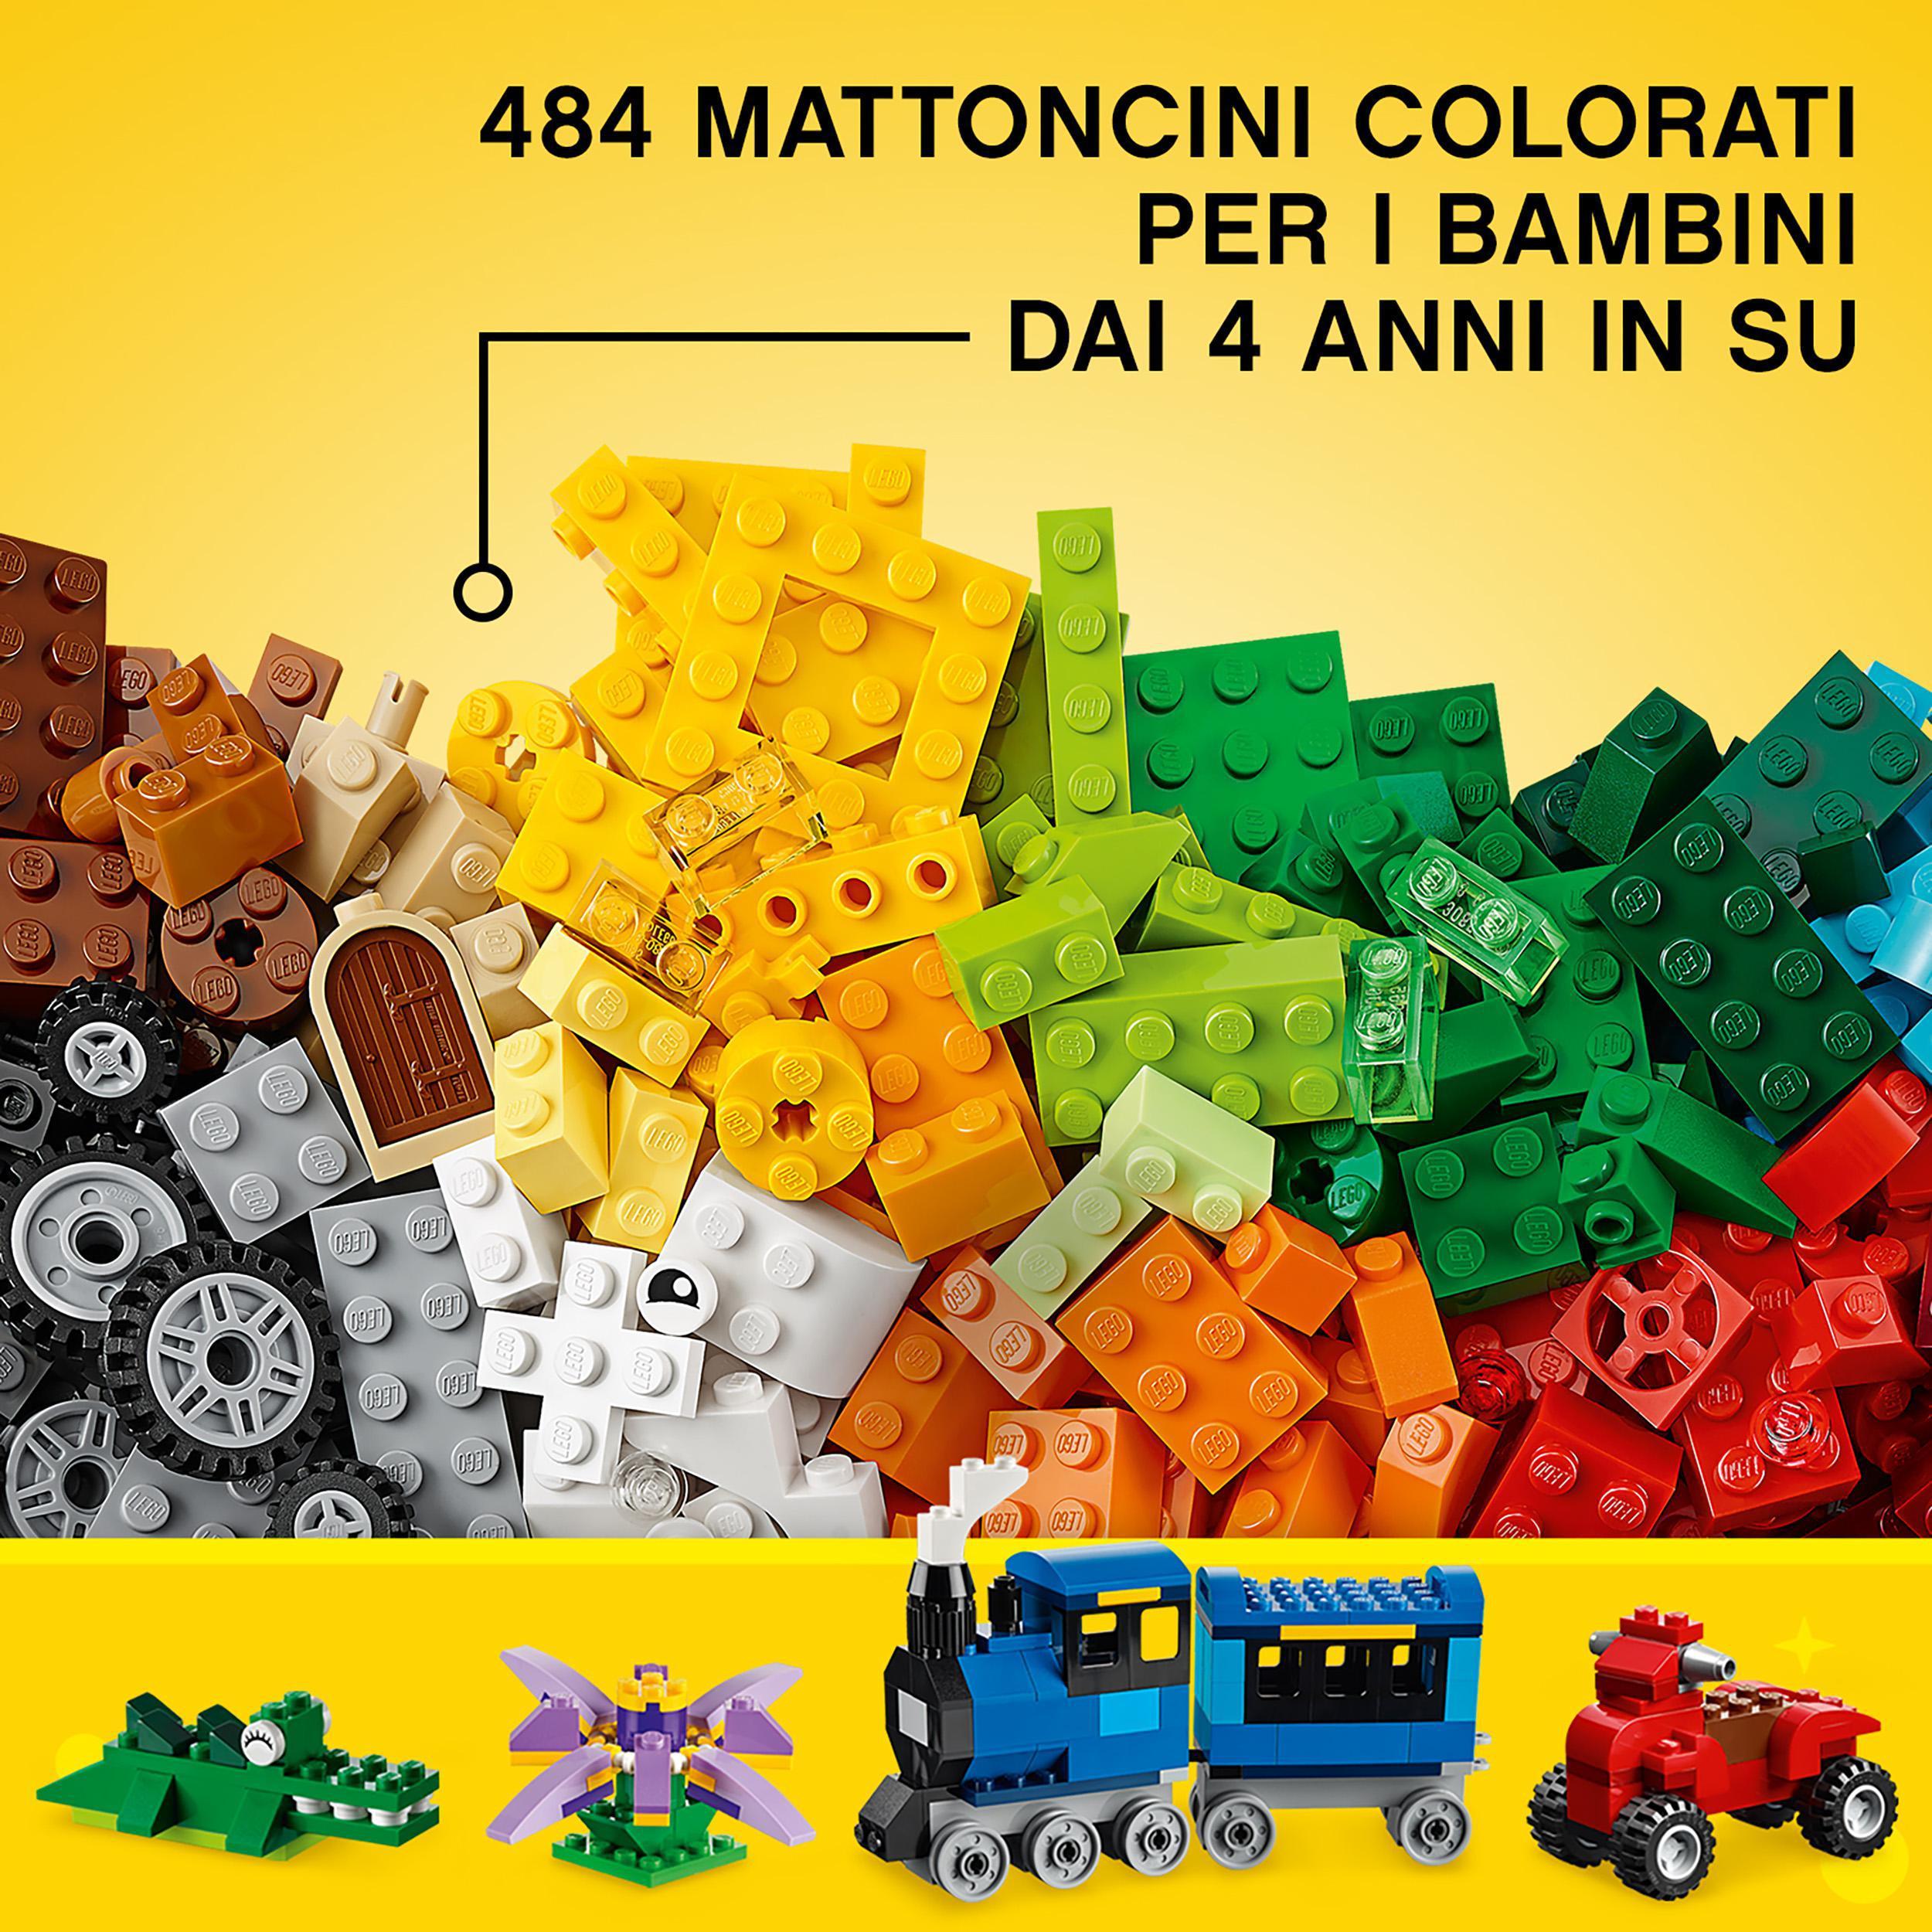 LEGO Classic 10696 Scatola Mattoncini Creativi Media, Contenitore per  Costruire Fiori, Macchina, Treno e Aereo Giocattolo - Toys Center